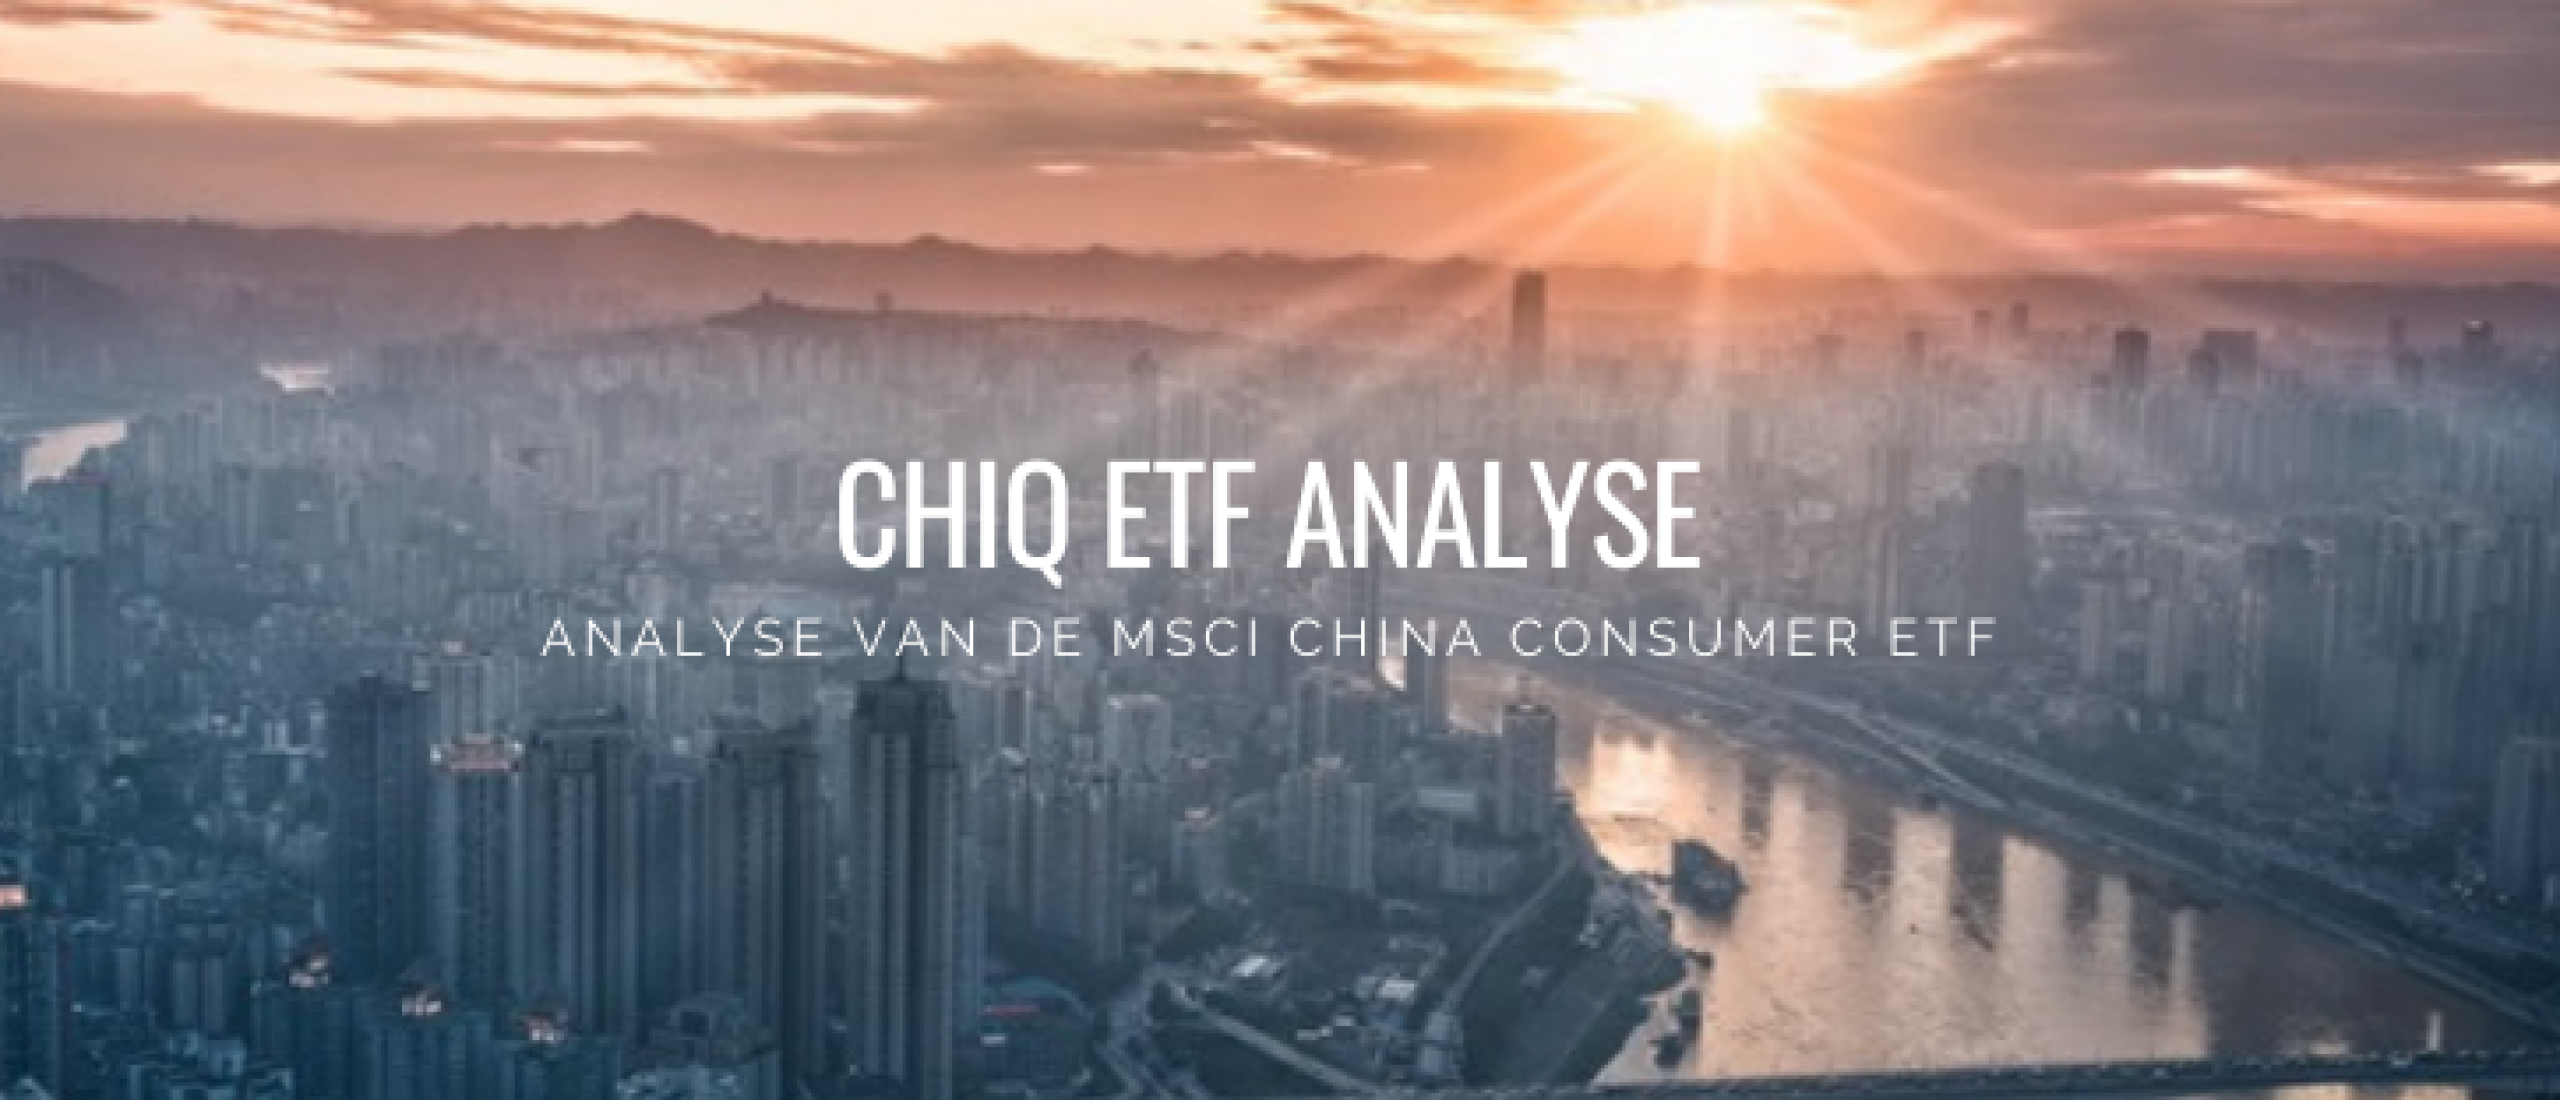 MSCI China Consumer Discretionary ETF (CHIQ) Analyse Koersverwachting